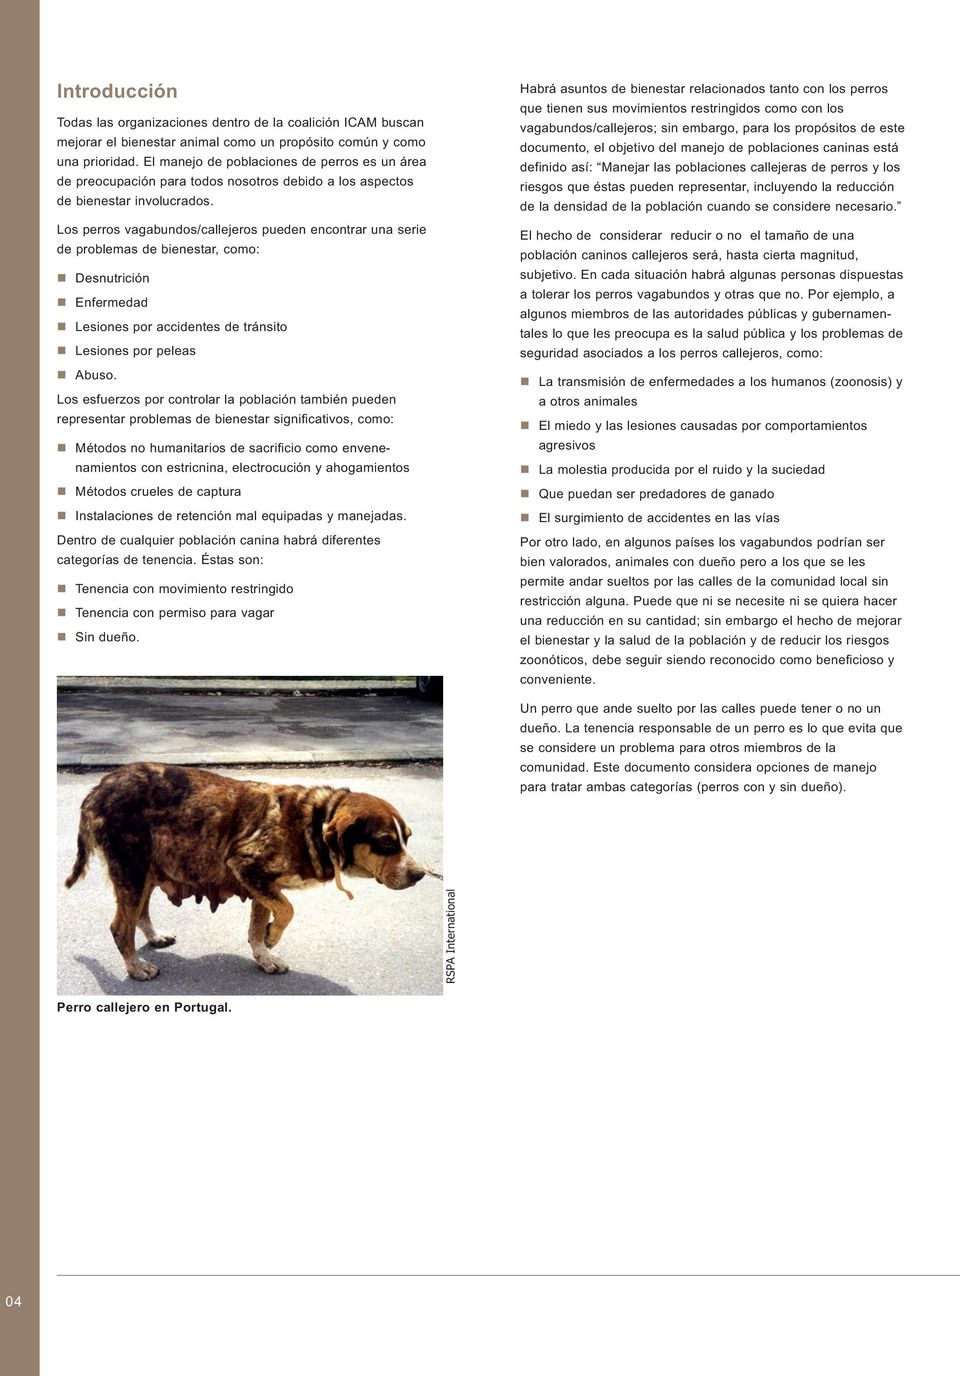 Los perros vagabundos/callejeros pueden encontrar una serie de problemas de bienestar, como: Desnutrición Enfermedad Lesiones por accidentes de tránsito Lesiones por peleas Abuso.